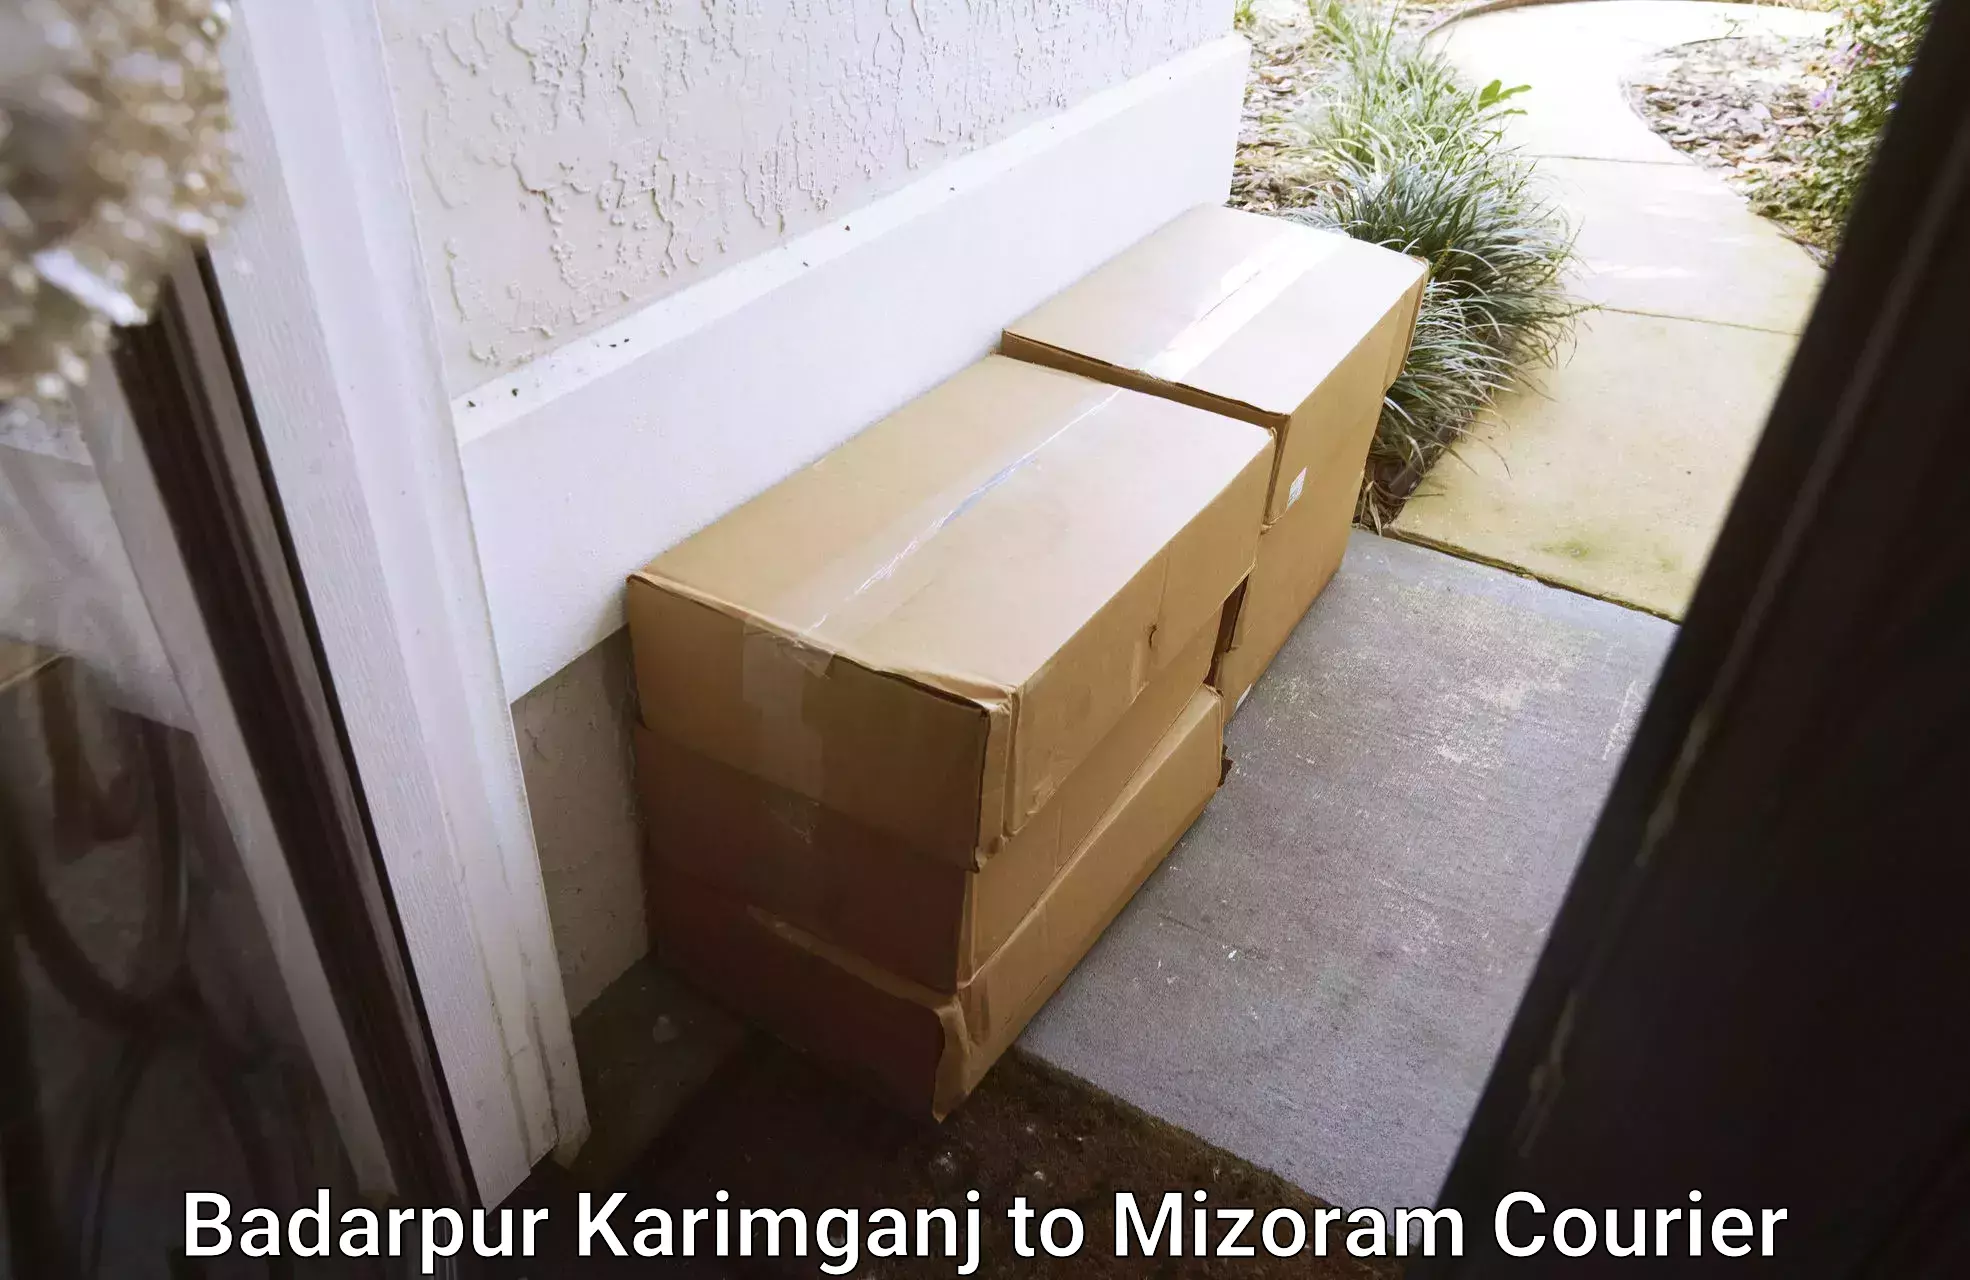 On-demand courier Badarpur Karimganj to Saiha